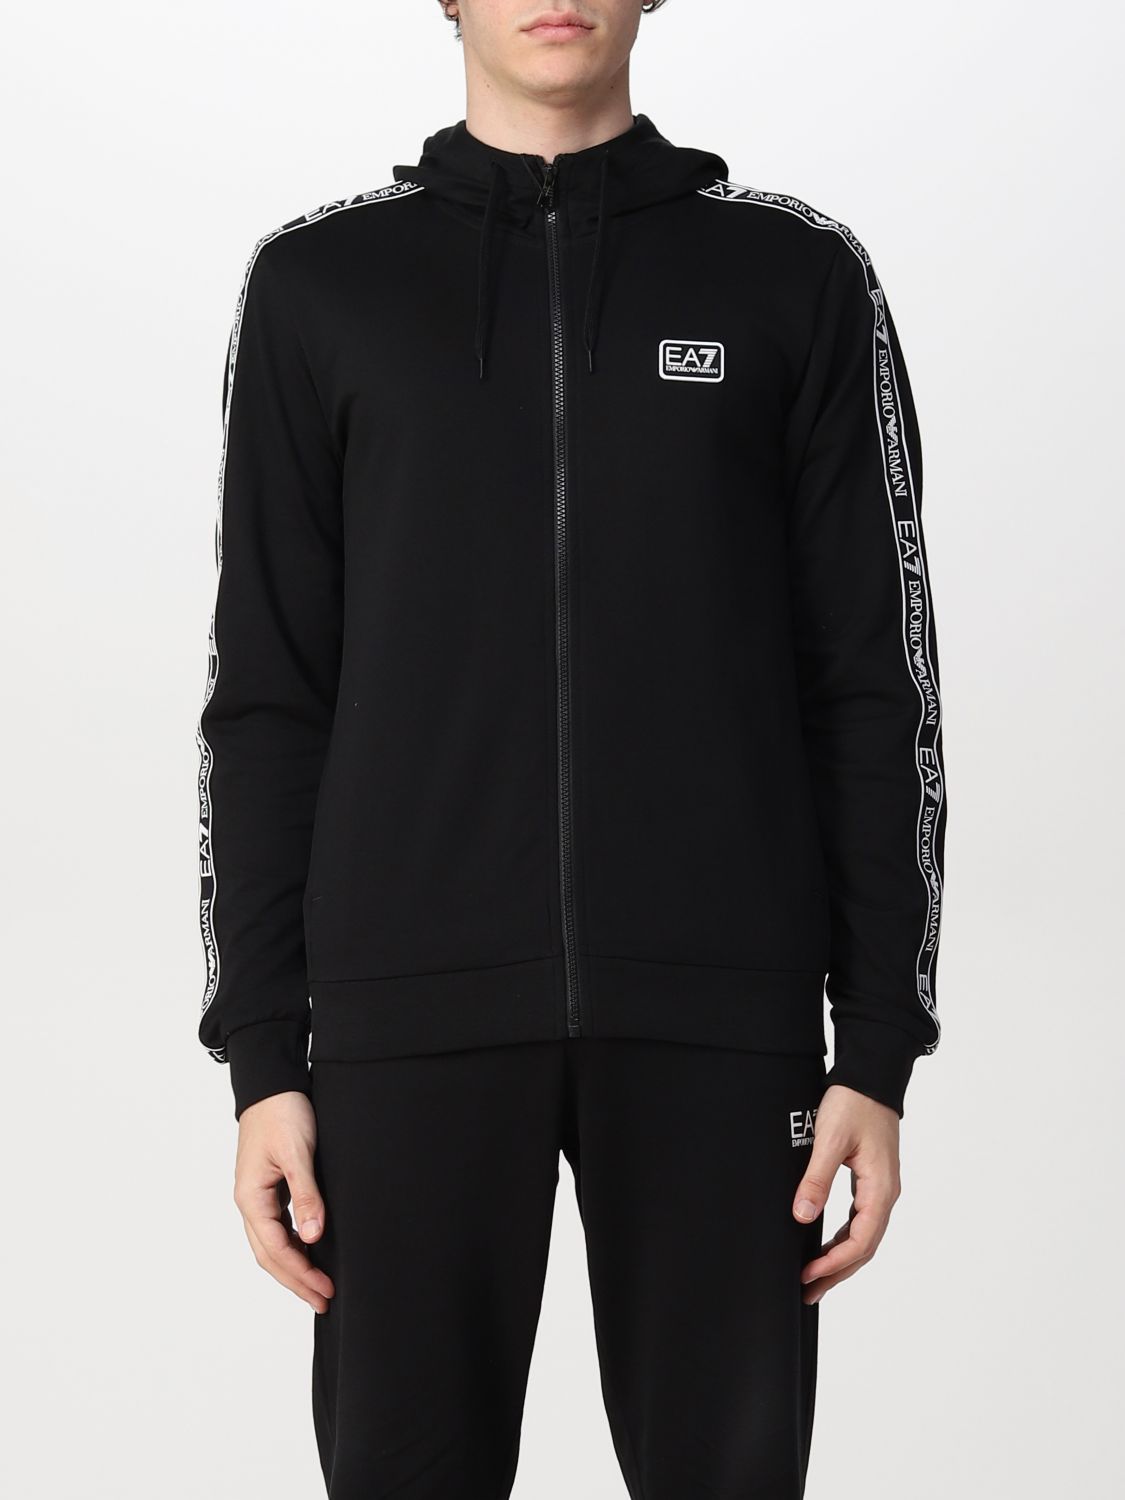 Ea7 Outlet: Basic sweatshirt with logoed bands - Black | Ea7 sweatshirt ...